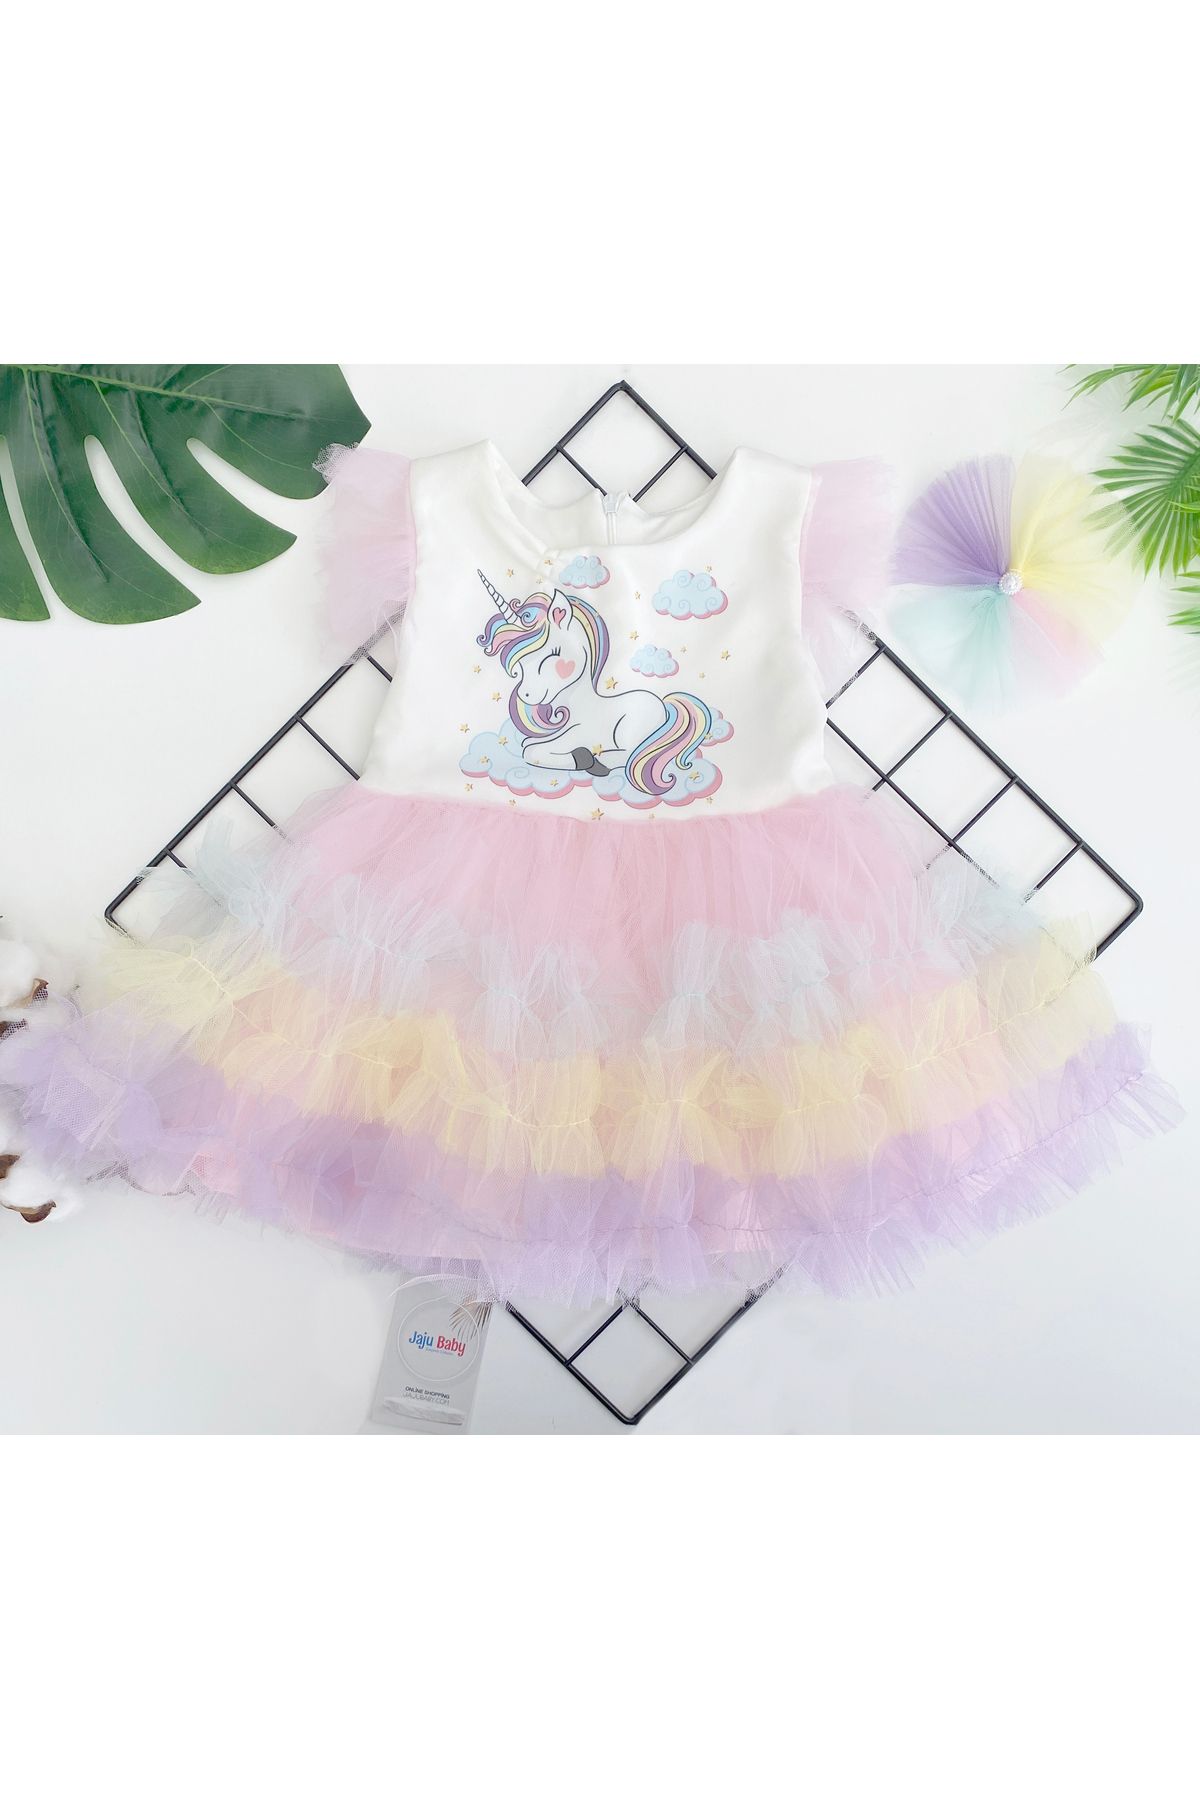 Jaju Baby Kız Çocuk Renkli Tütü Etek Unicorn Desenli Elbise Ve Toka